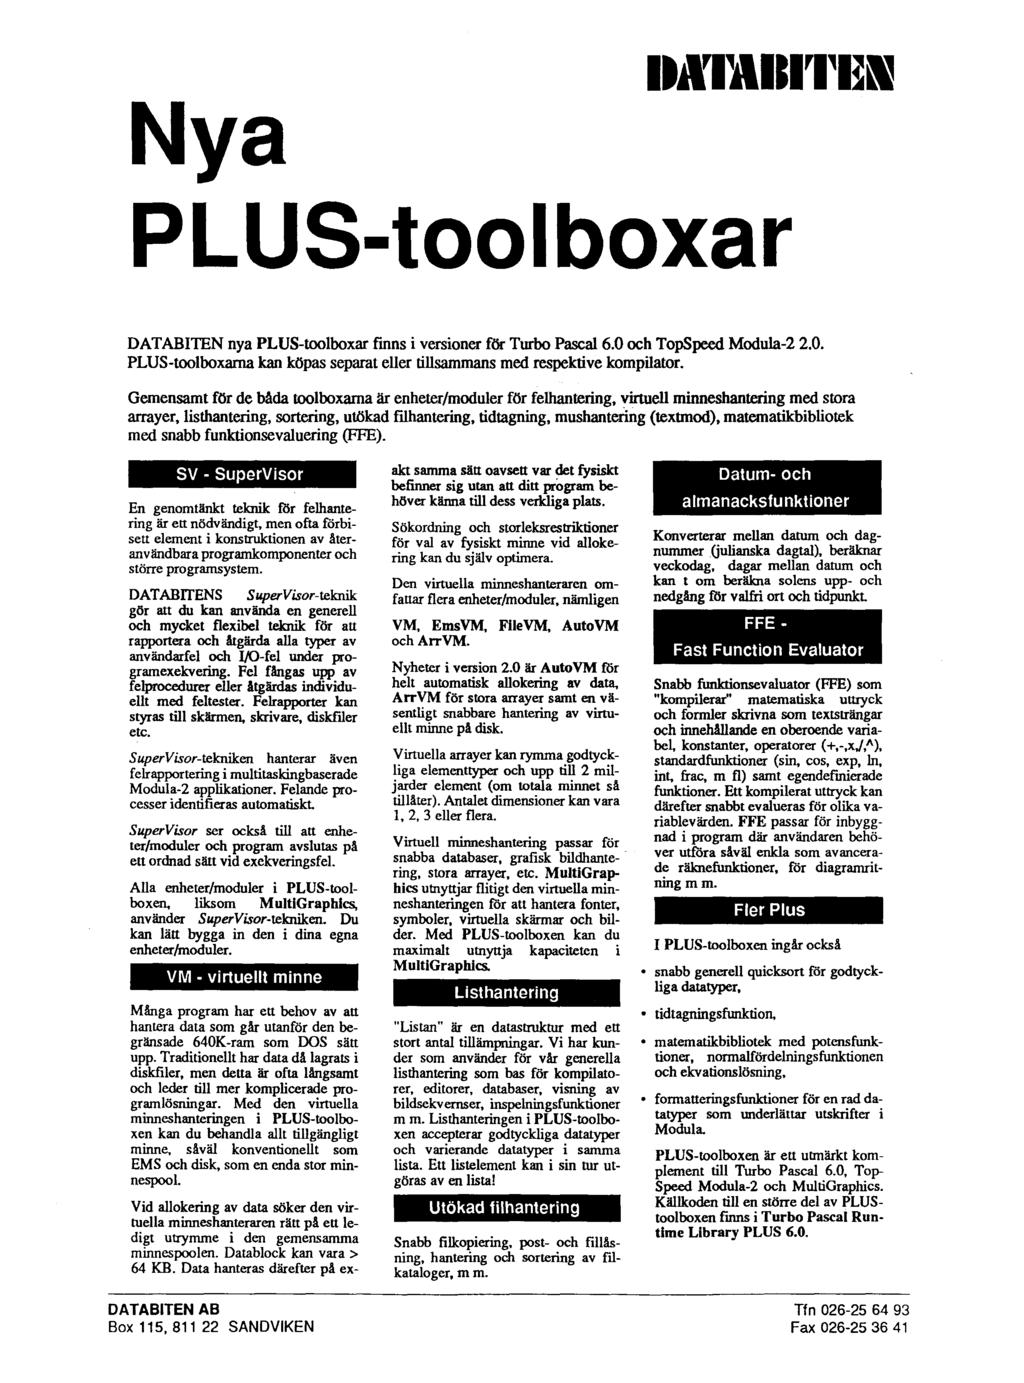 DATABITEN nya PLUS-toolboxar finns i versioner för Turbo Pascal 6.0 och TopSpeed Modula-2 2.0. PLUS-toolboxarna kan köpas separat eller tillsammans med re-spektive kompilator.